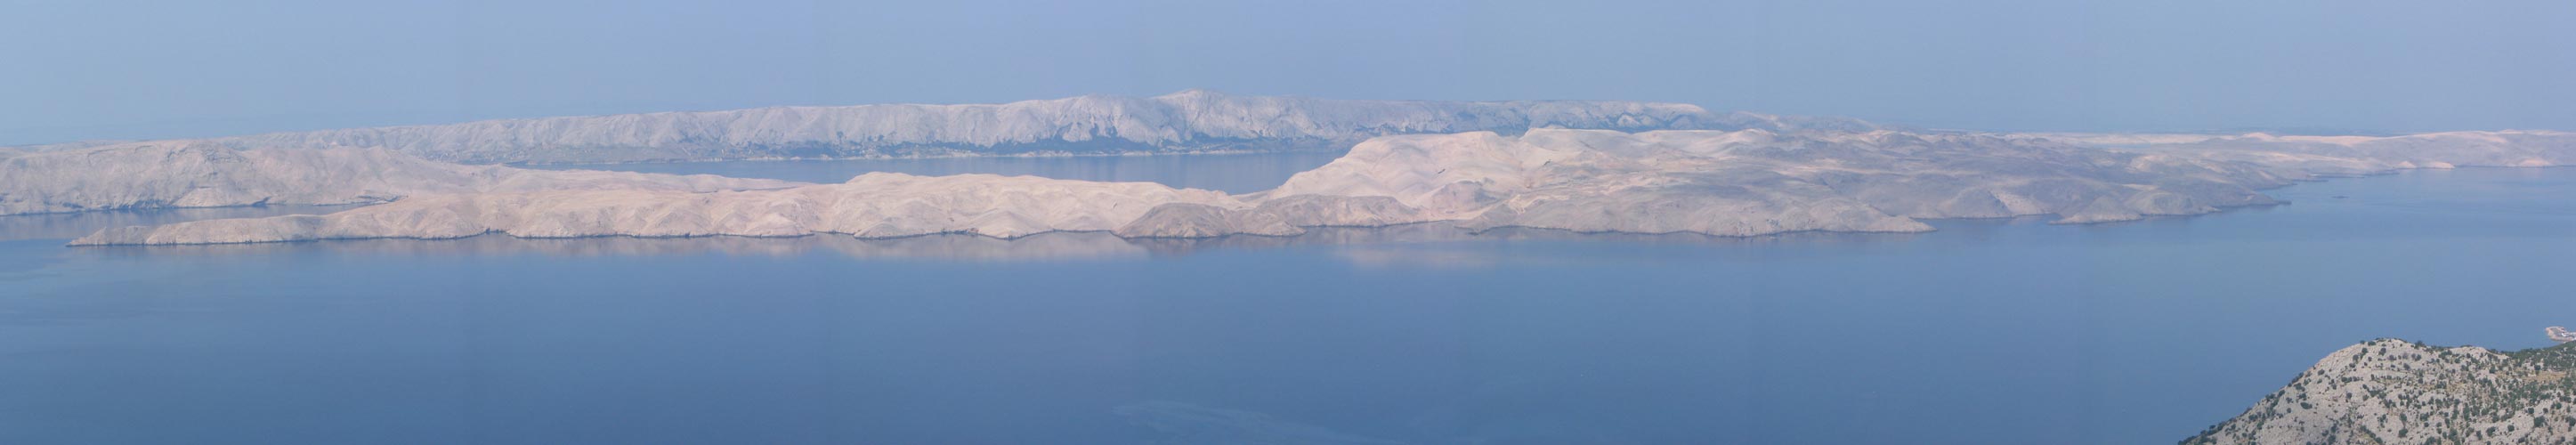 Ostrov Krk